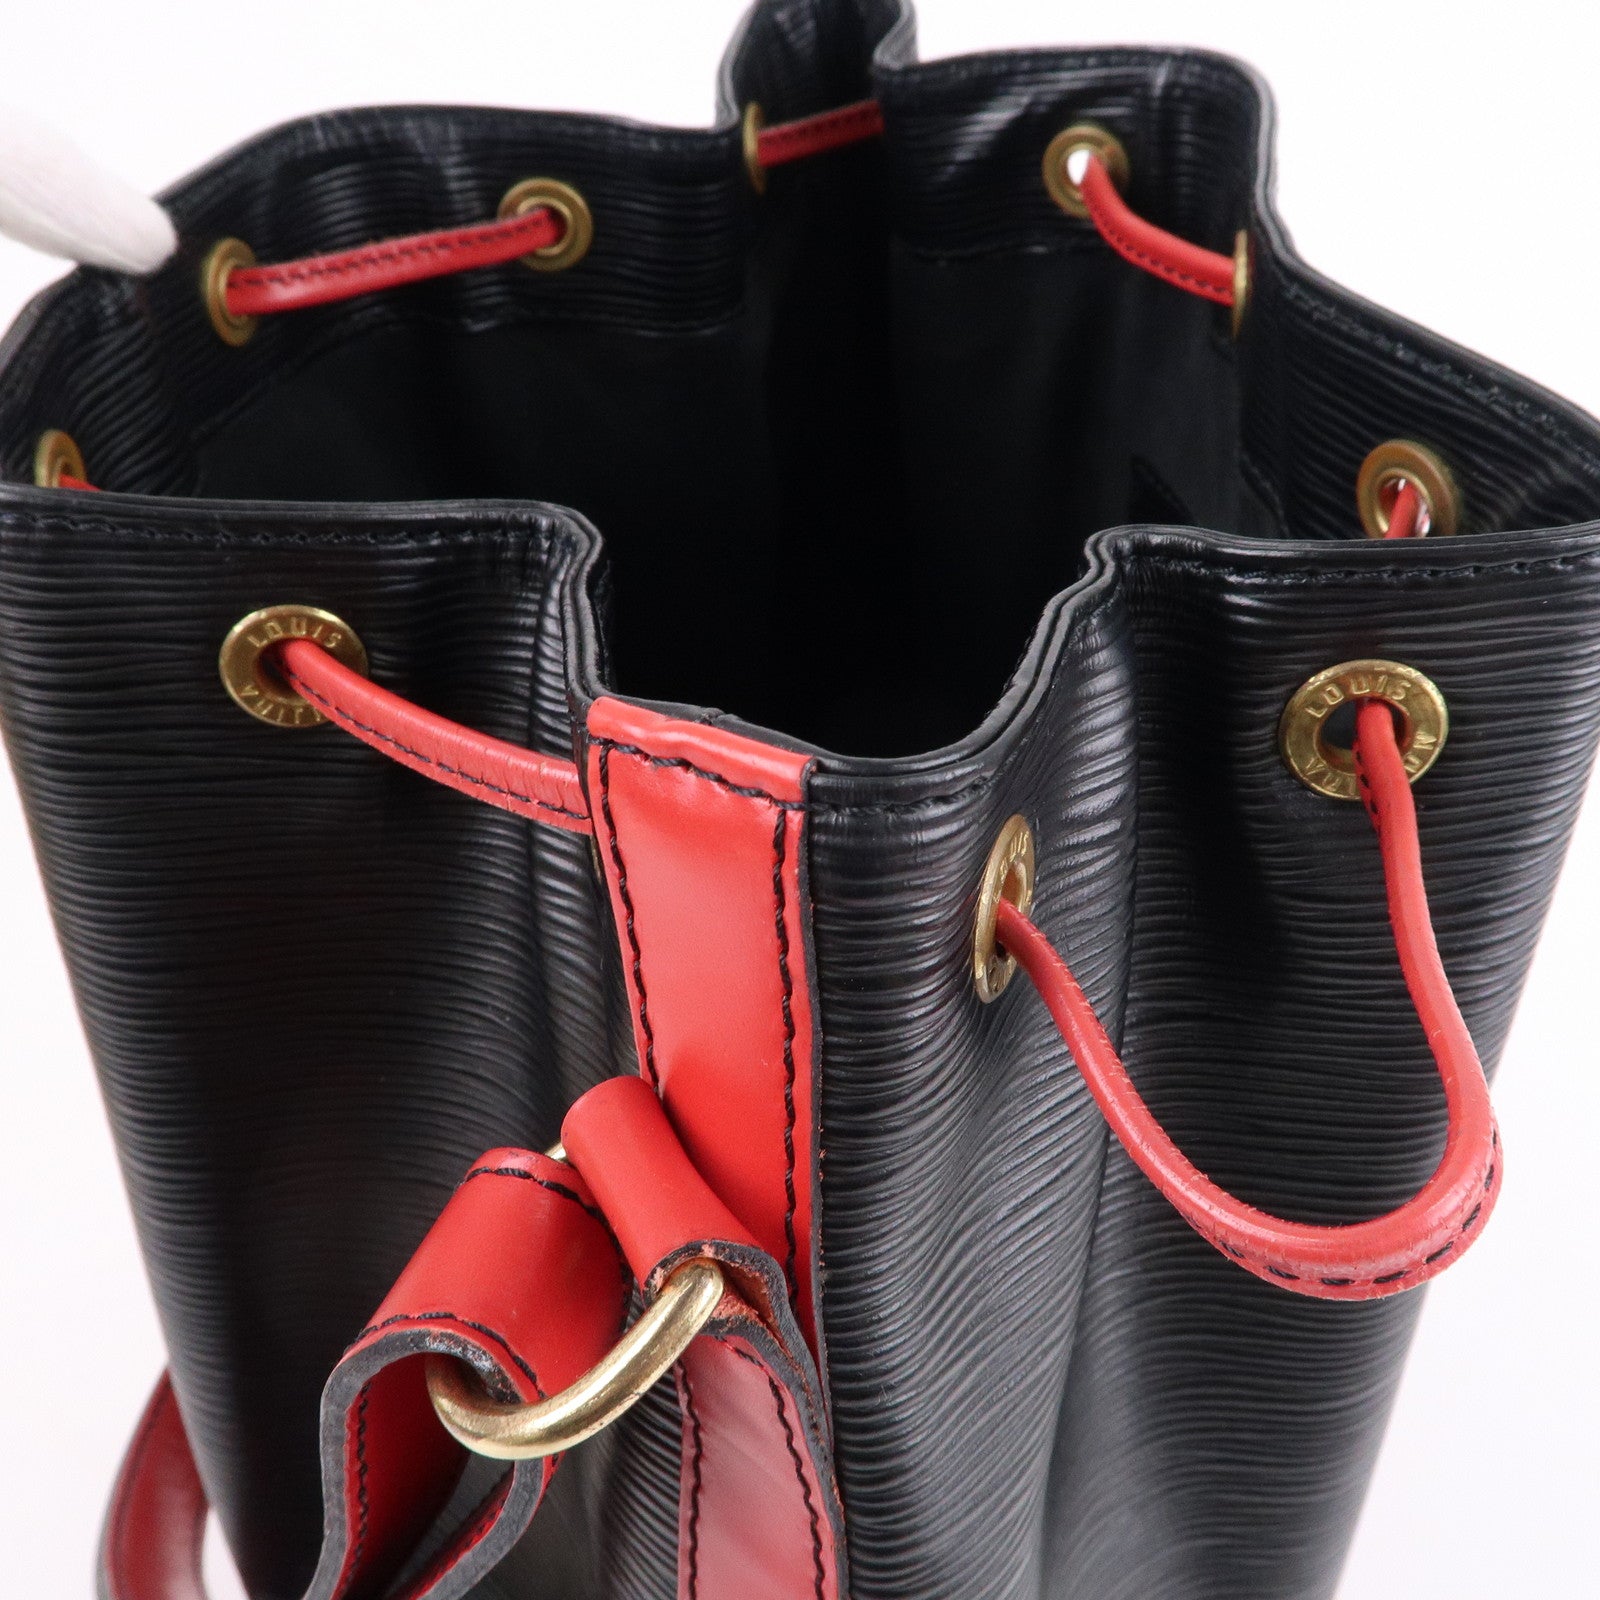 Louis-Vuitton-Epi-Noe-Shoulder-Bag-Noir-Castilian-Red-M44017 – dct